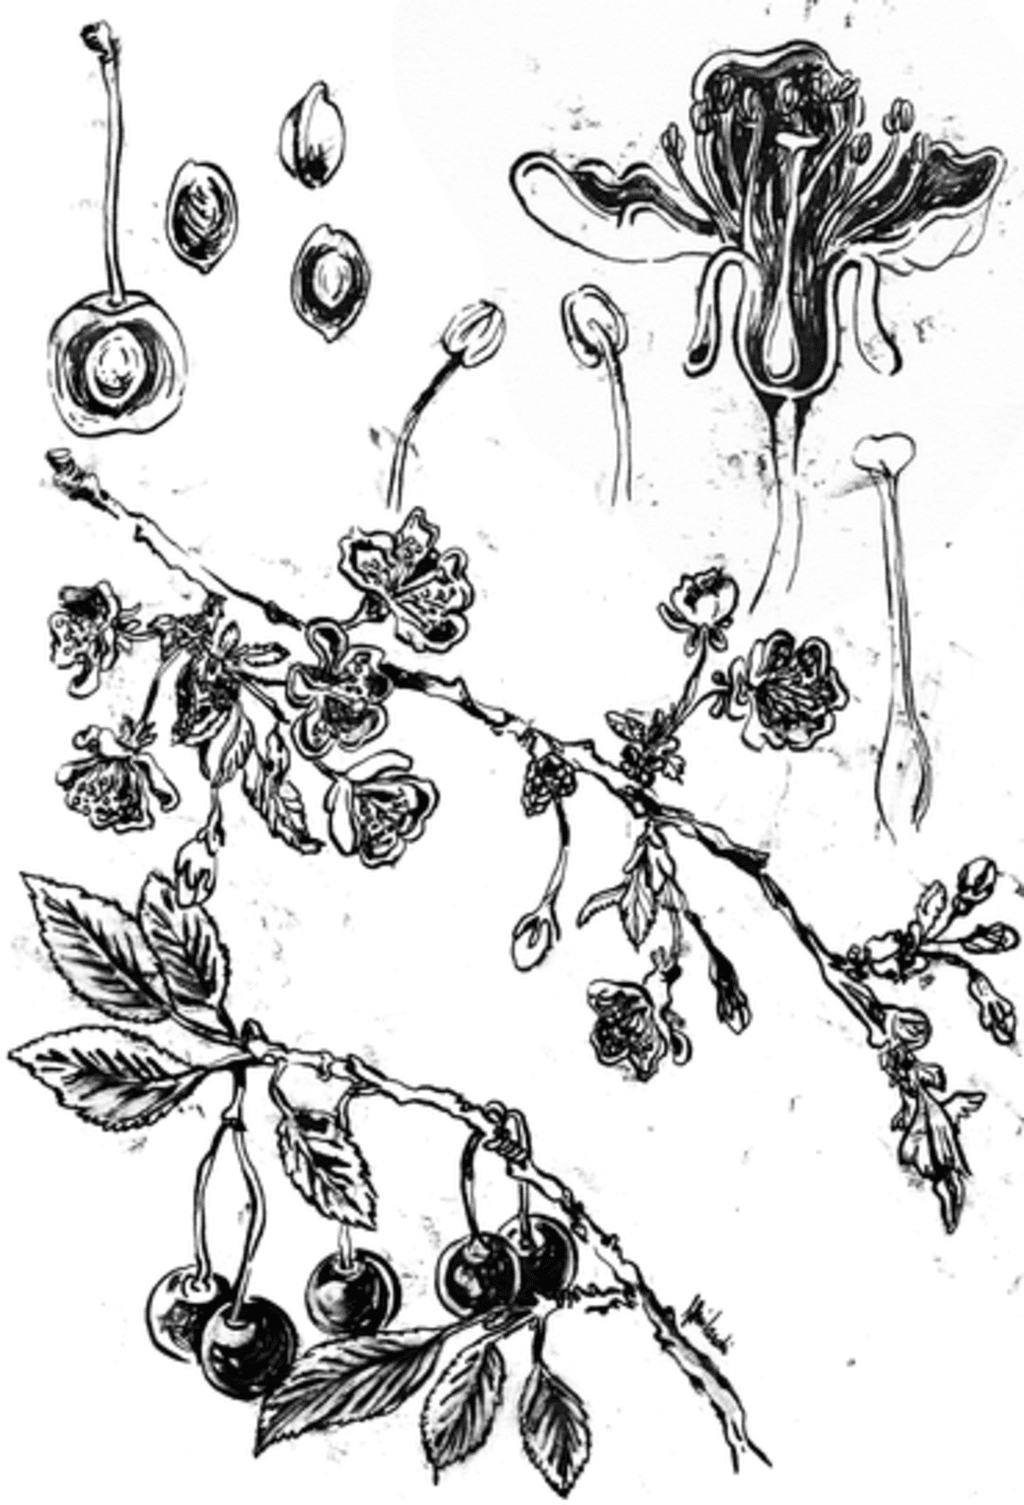 LA CILIEGIA - illustrazione botanica